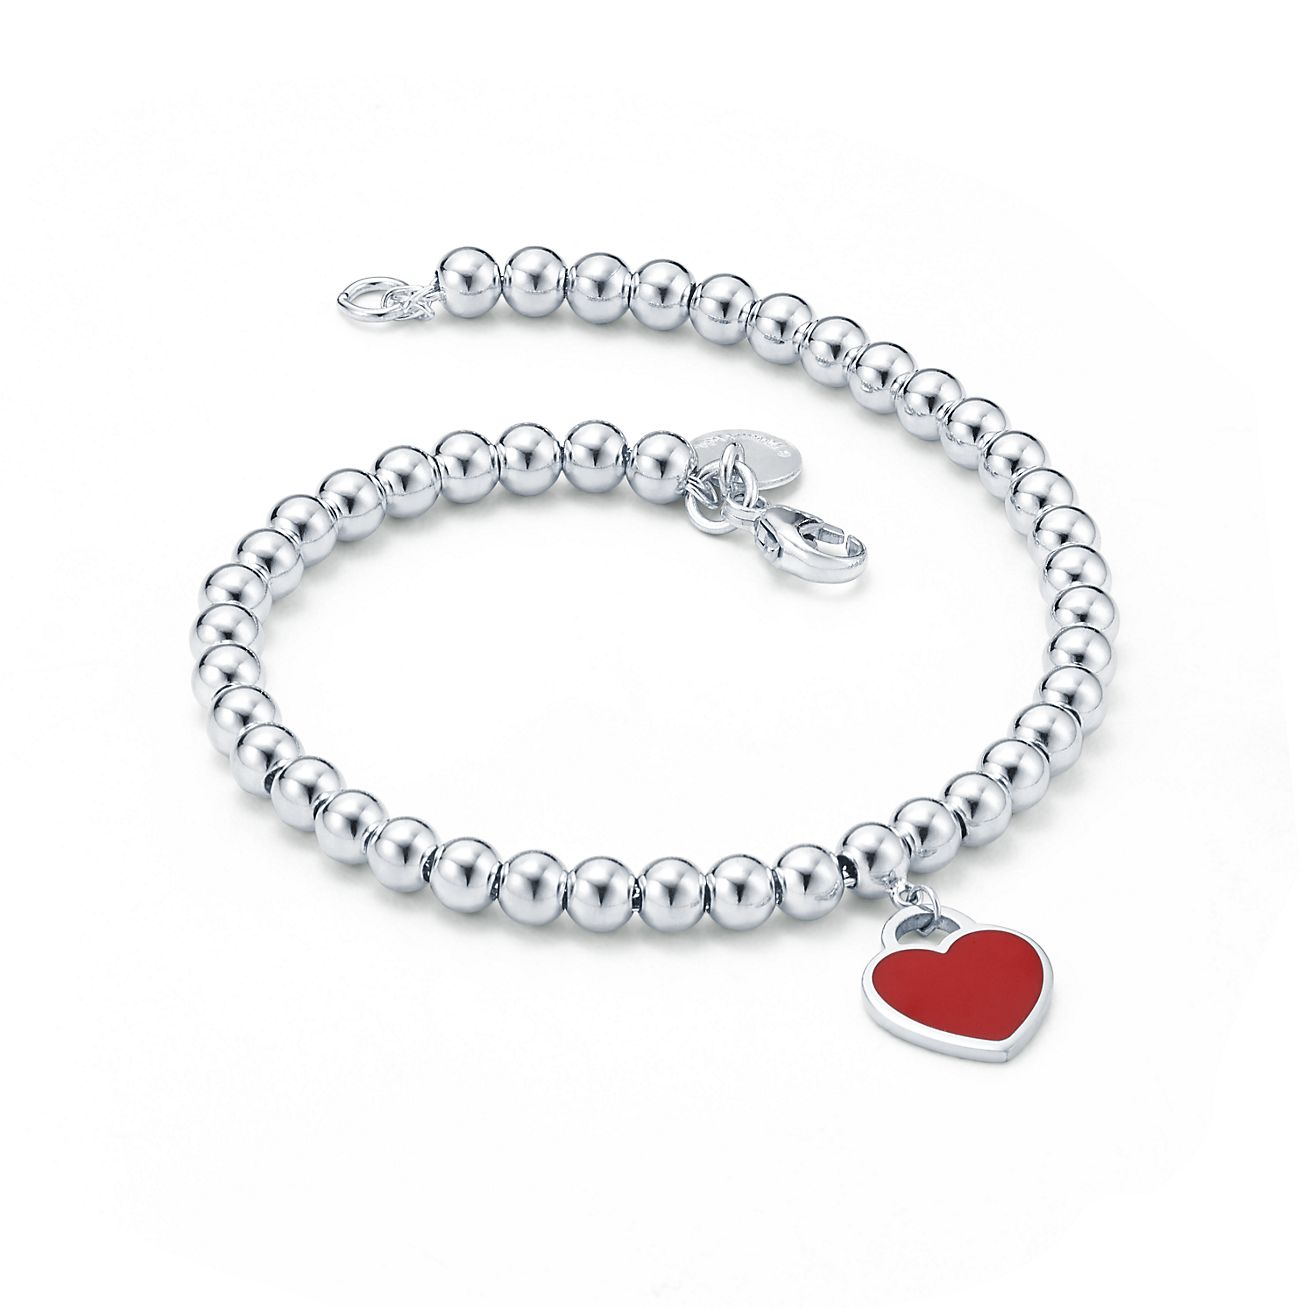 tiffany bracelet red heart